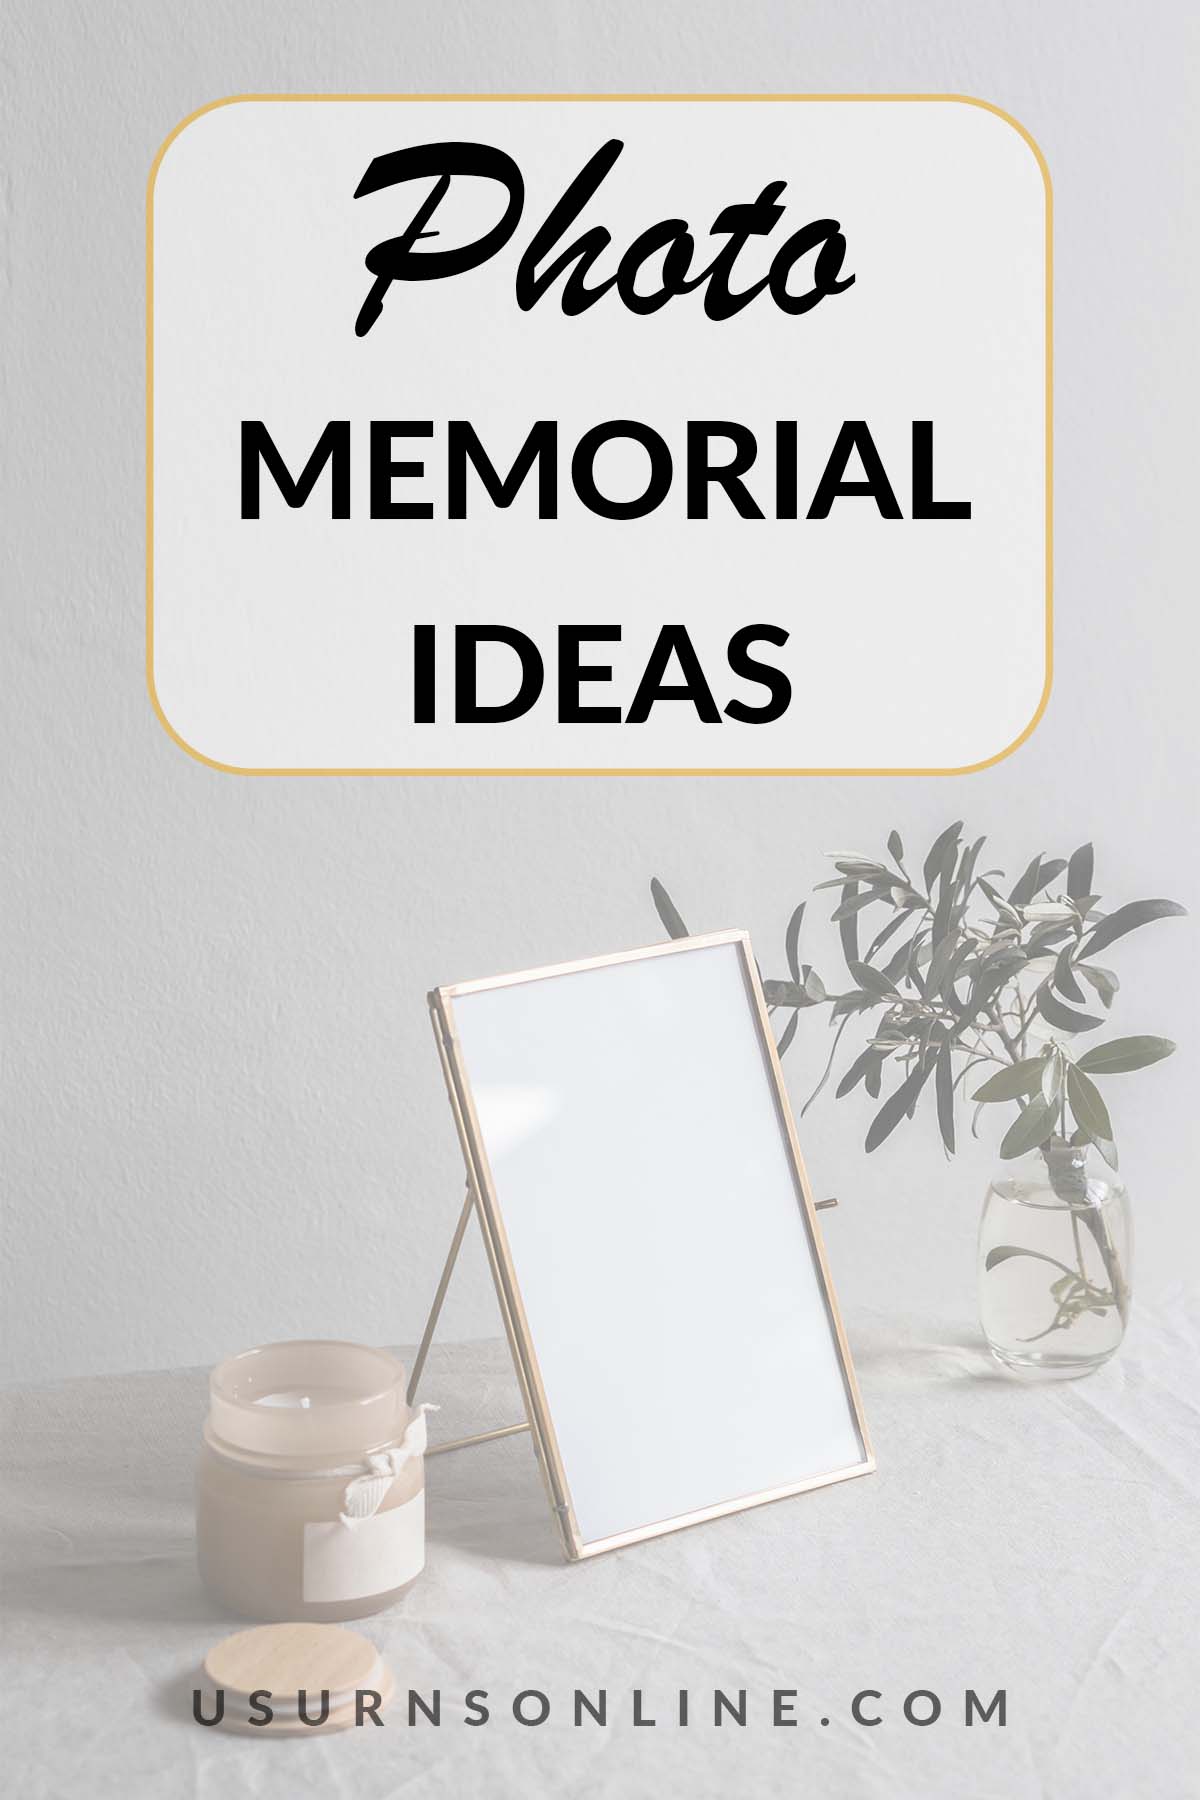 photo memorials - feature image